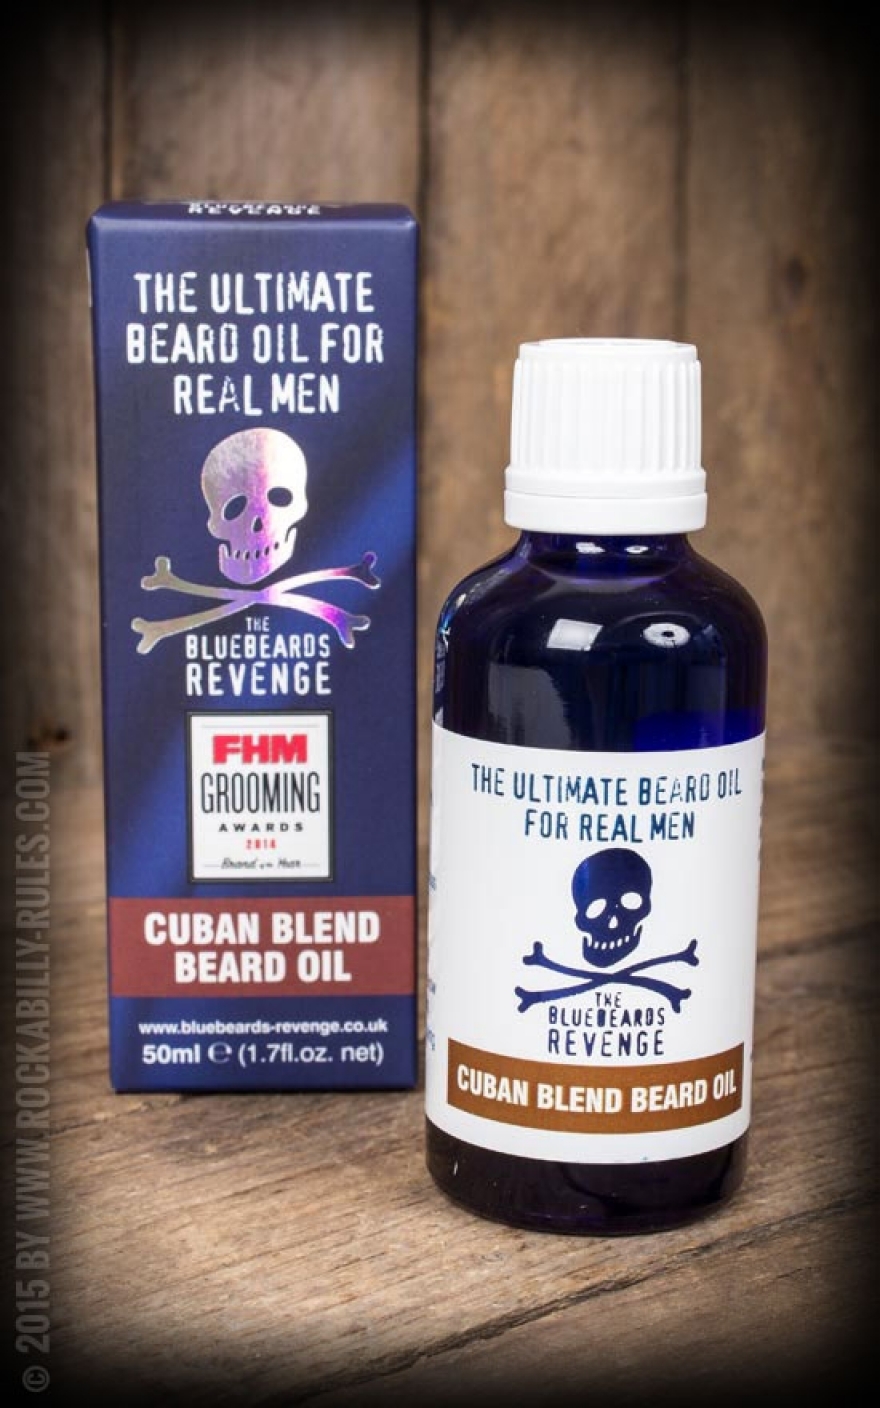 Bluebeards Revenge Cuban Blend